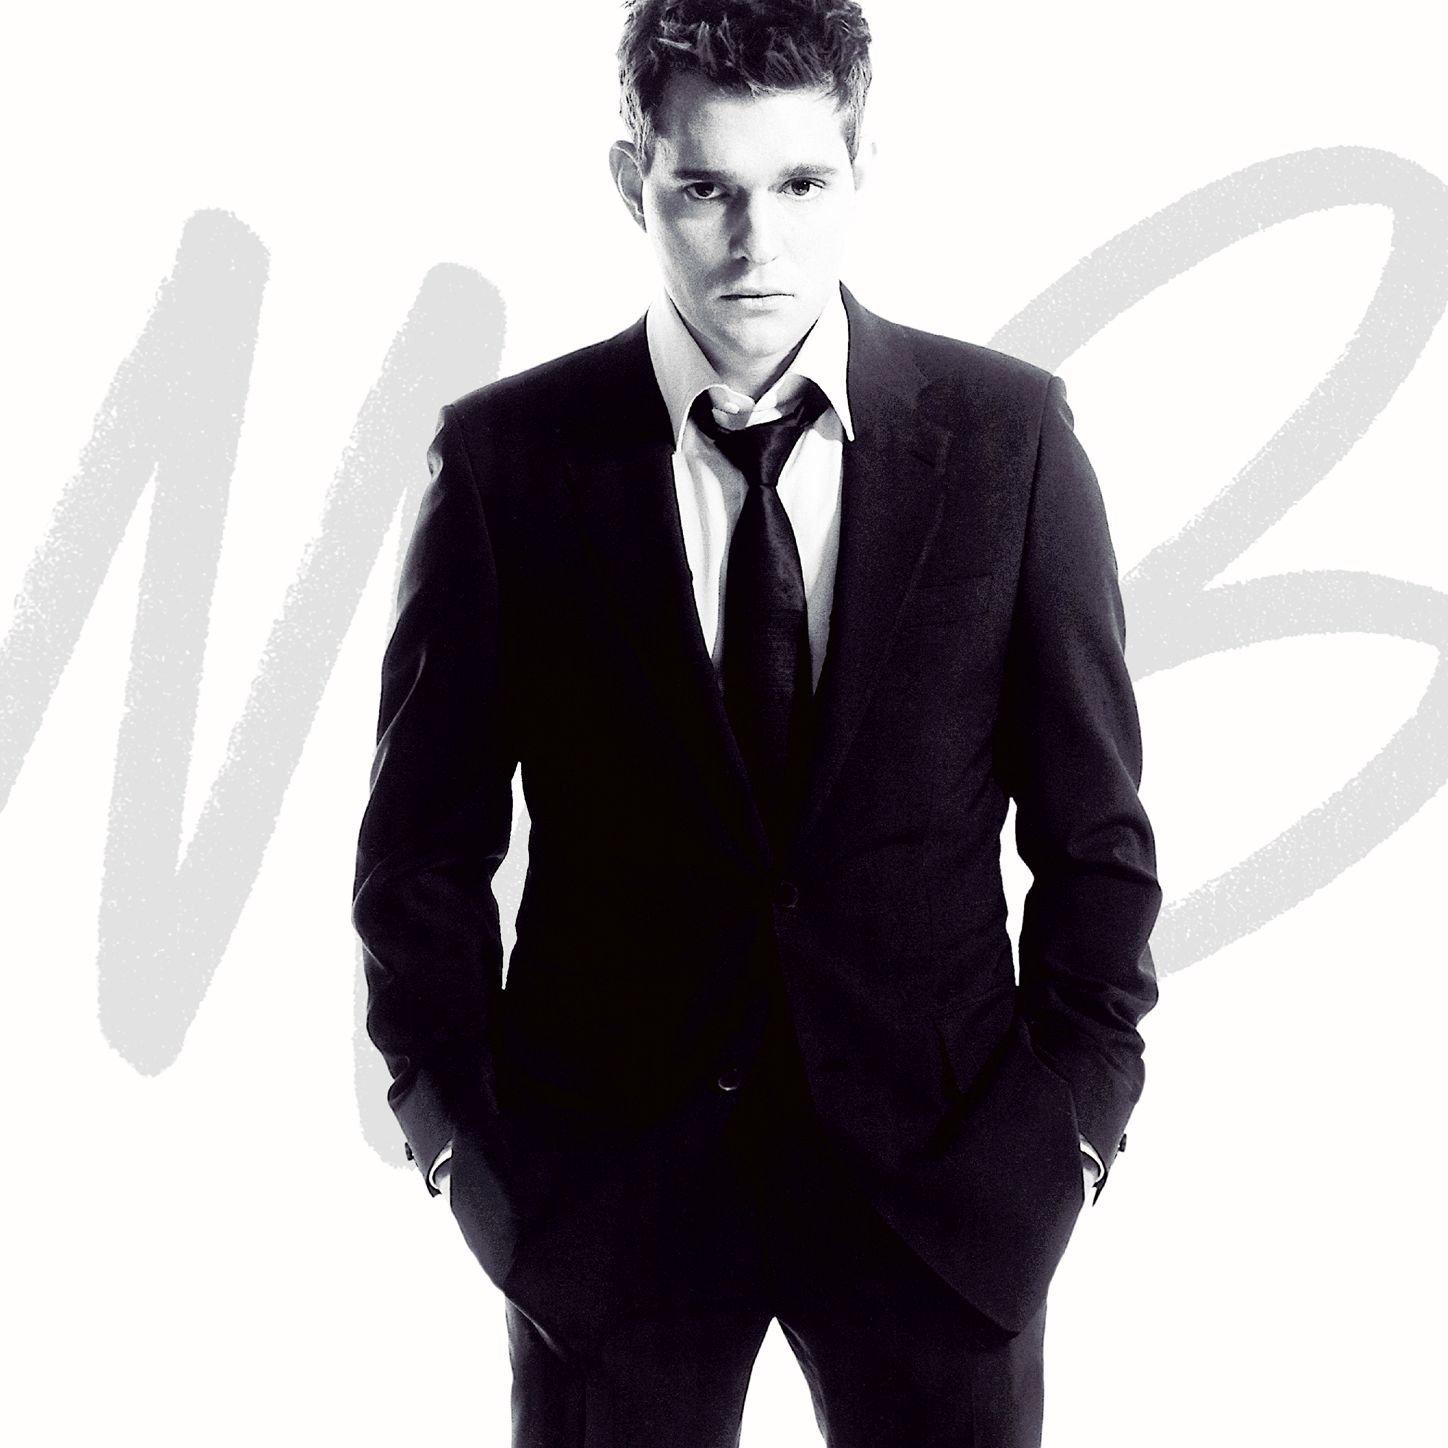 Michael Bublé's Time.com Music